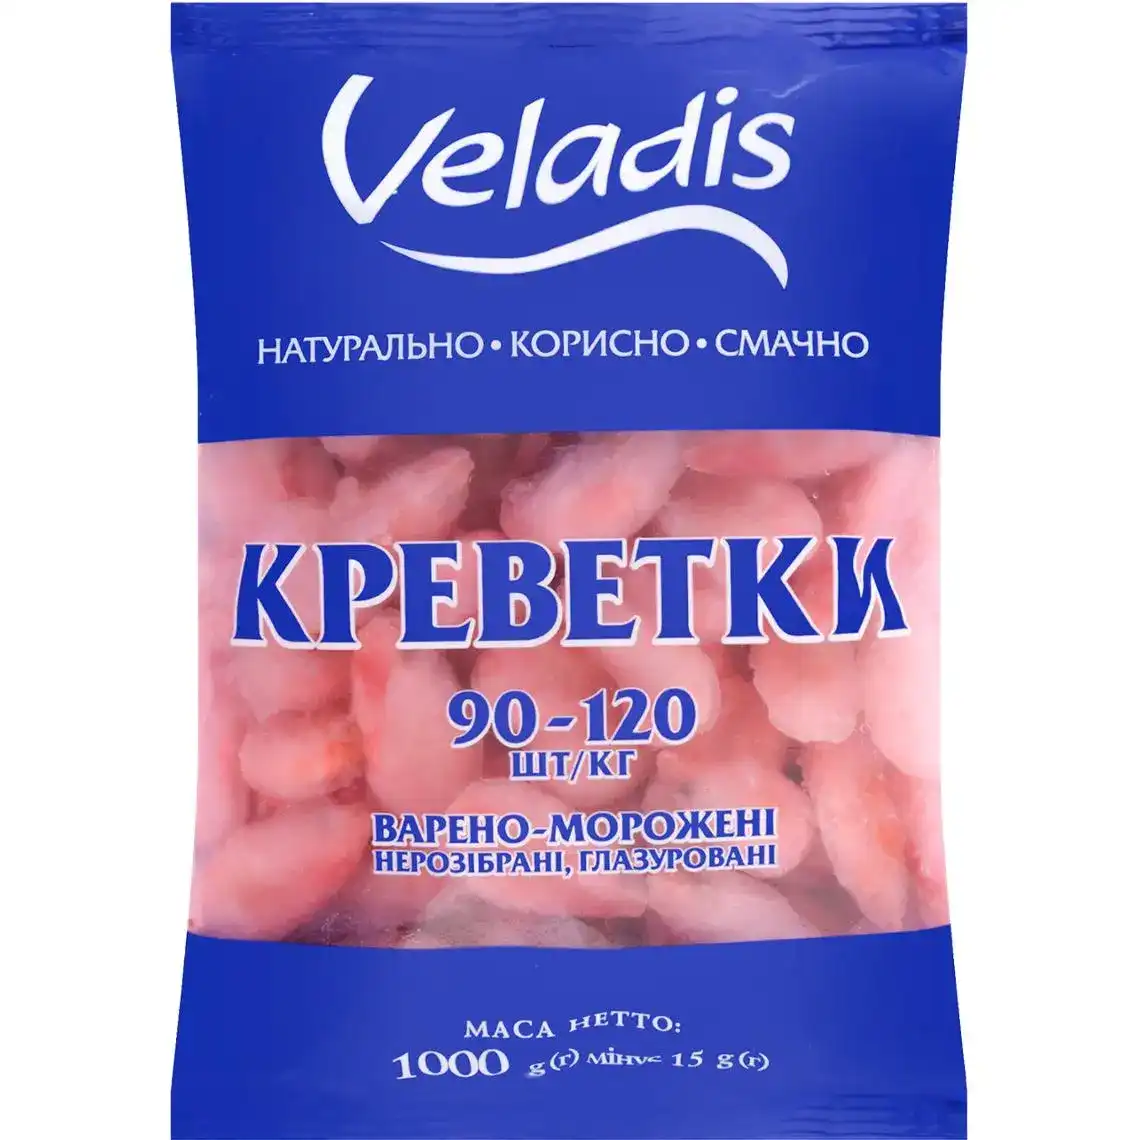 Креветки Veladis нерозібрані глазуровані 90/120 варено-морожені 1000 г